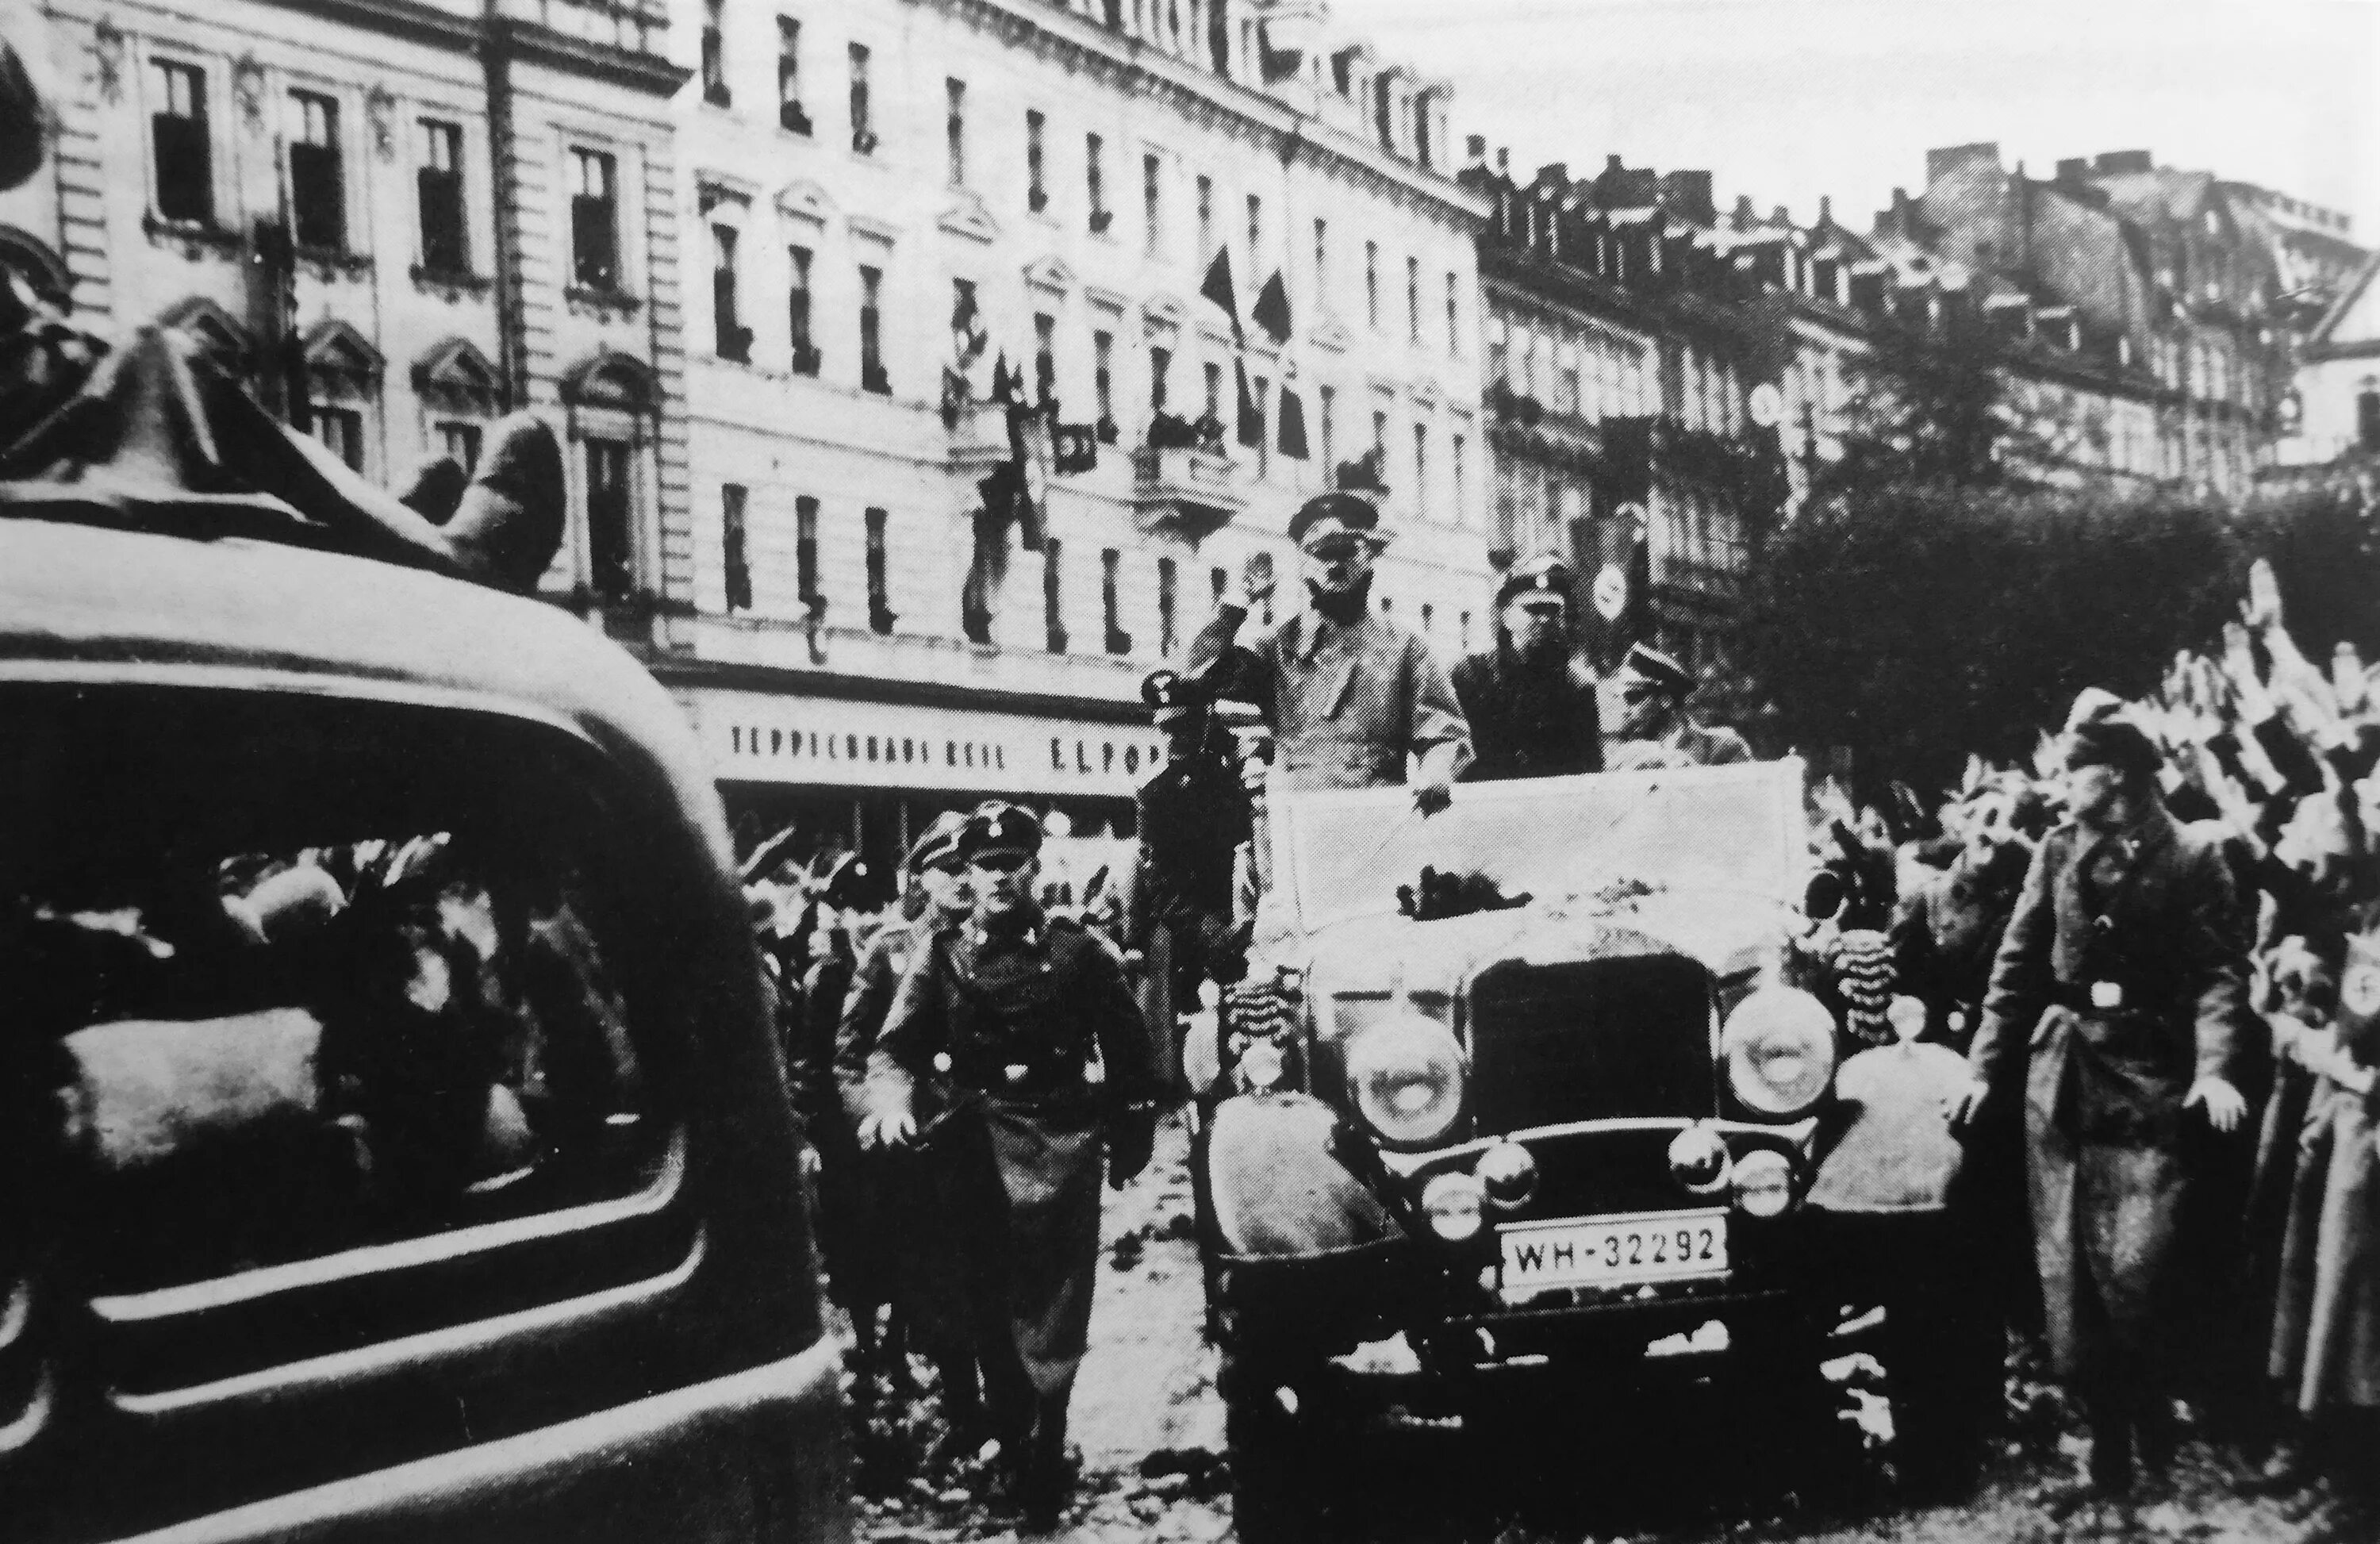 Судетская область чехословакии 1938. Немцы в Праге 1938.